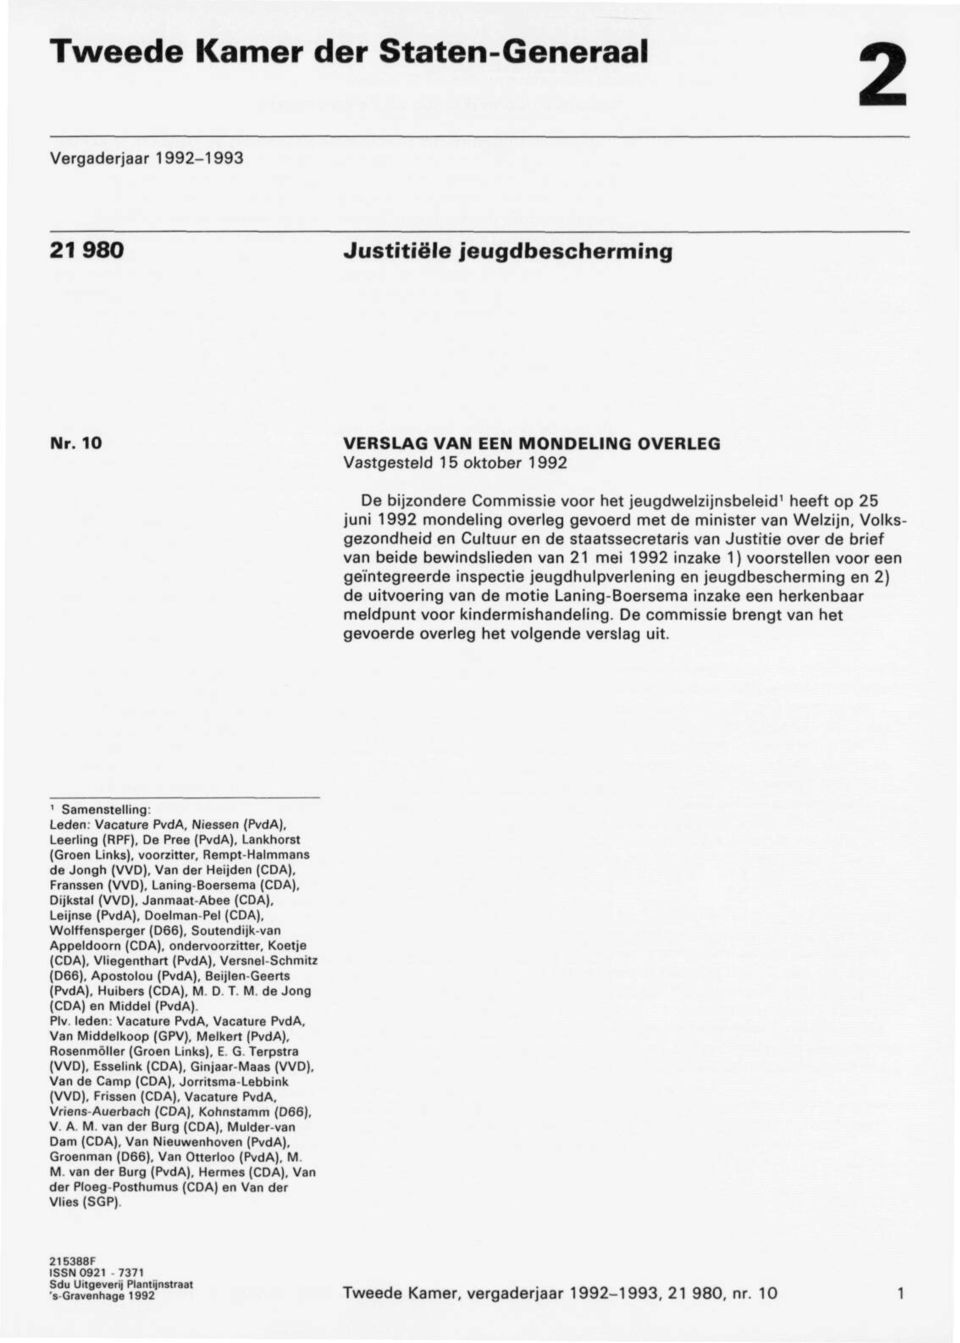 Volks gezondheid en Cultuur en de staatssecretaris van Justitie over de brief van beide bewindslieden van 21 mei 1992 inzake 1) voorstellen voor een geïntegreerde inspectie jeugdhulpverlening en